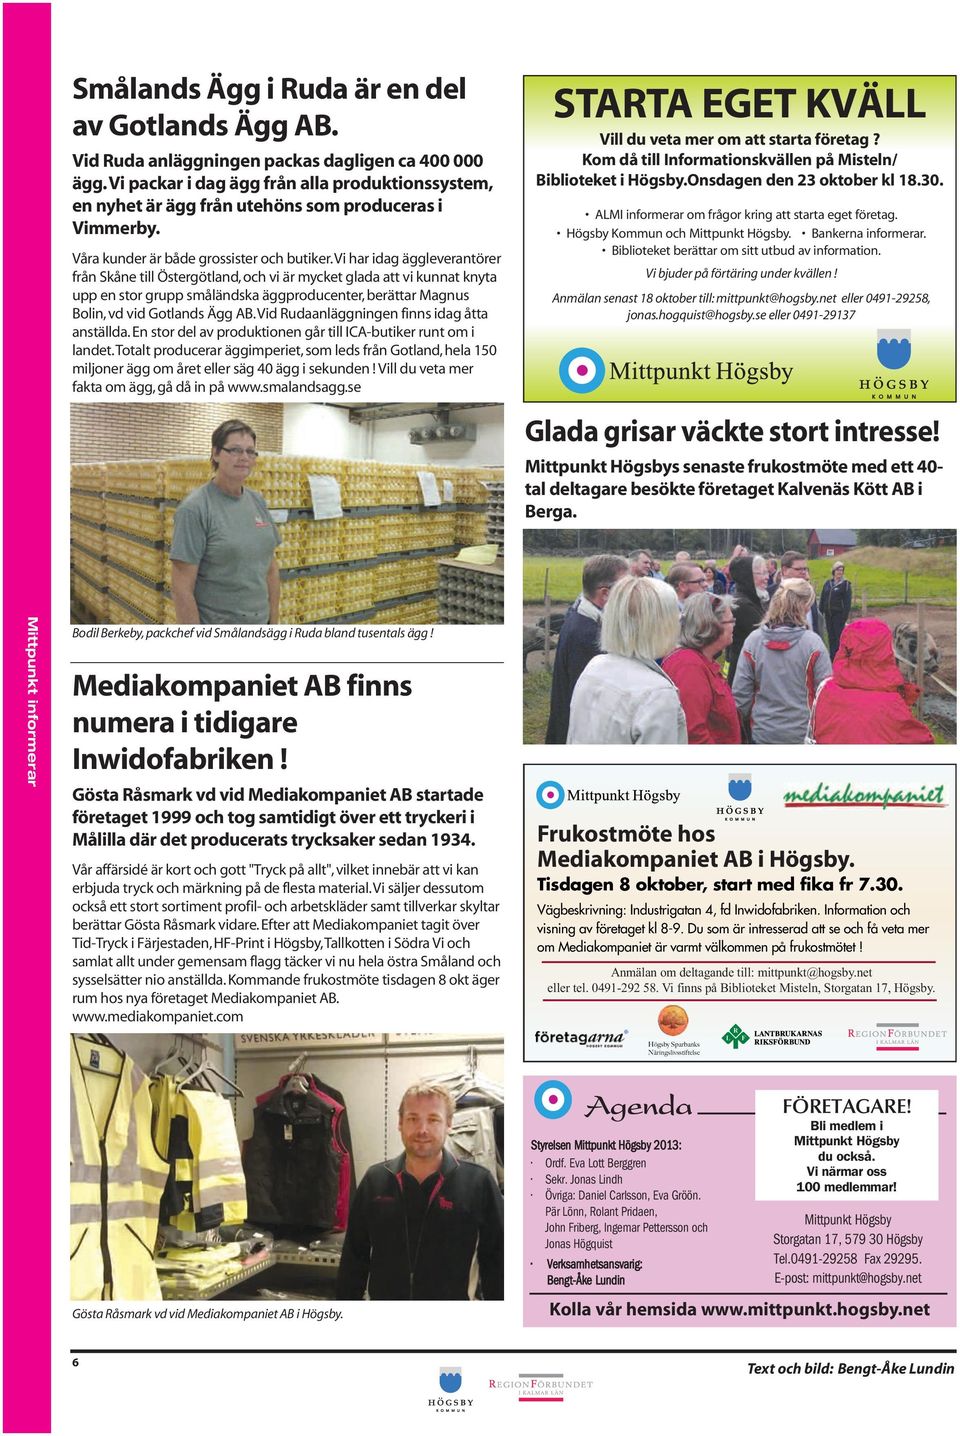 Vi har idag äggleverantörer från Skåne till Östergötland, och vi är mycket glada att vi kunnat knyta upp en stor grupp småländska äggproducenter, berättar Magnus Bolin, vd vid Gotlands Ägg AB.